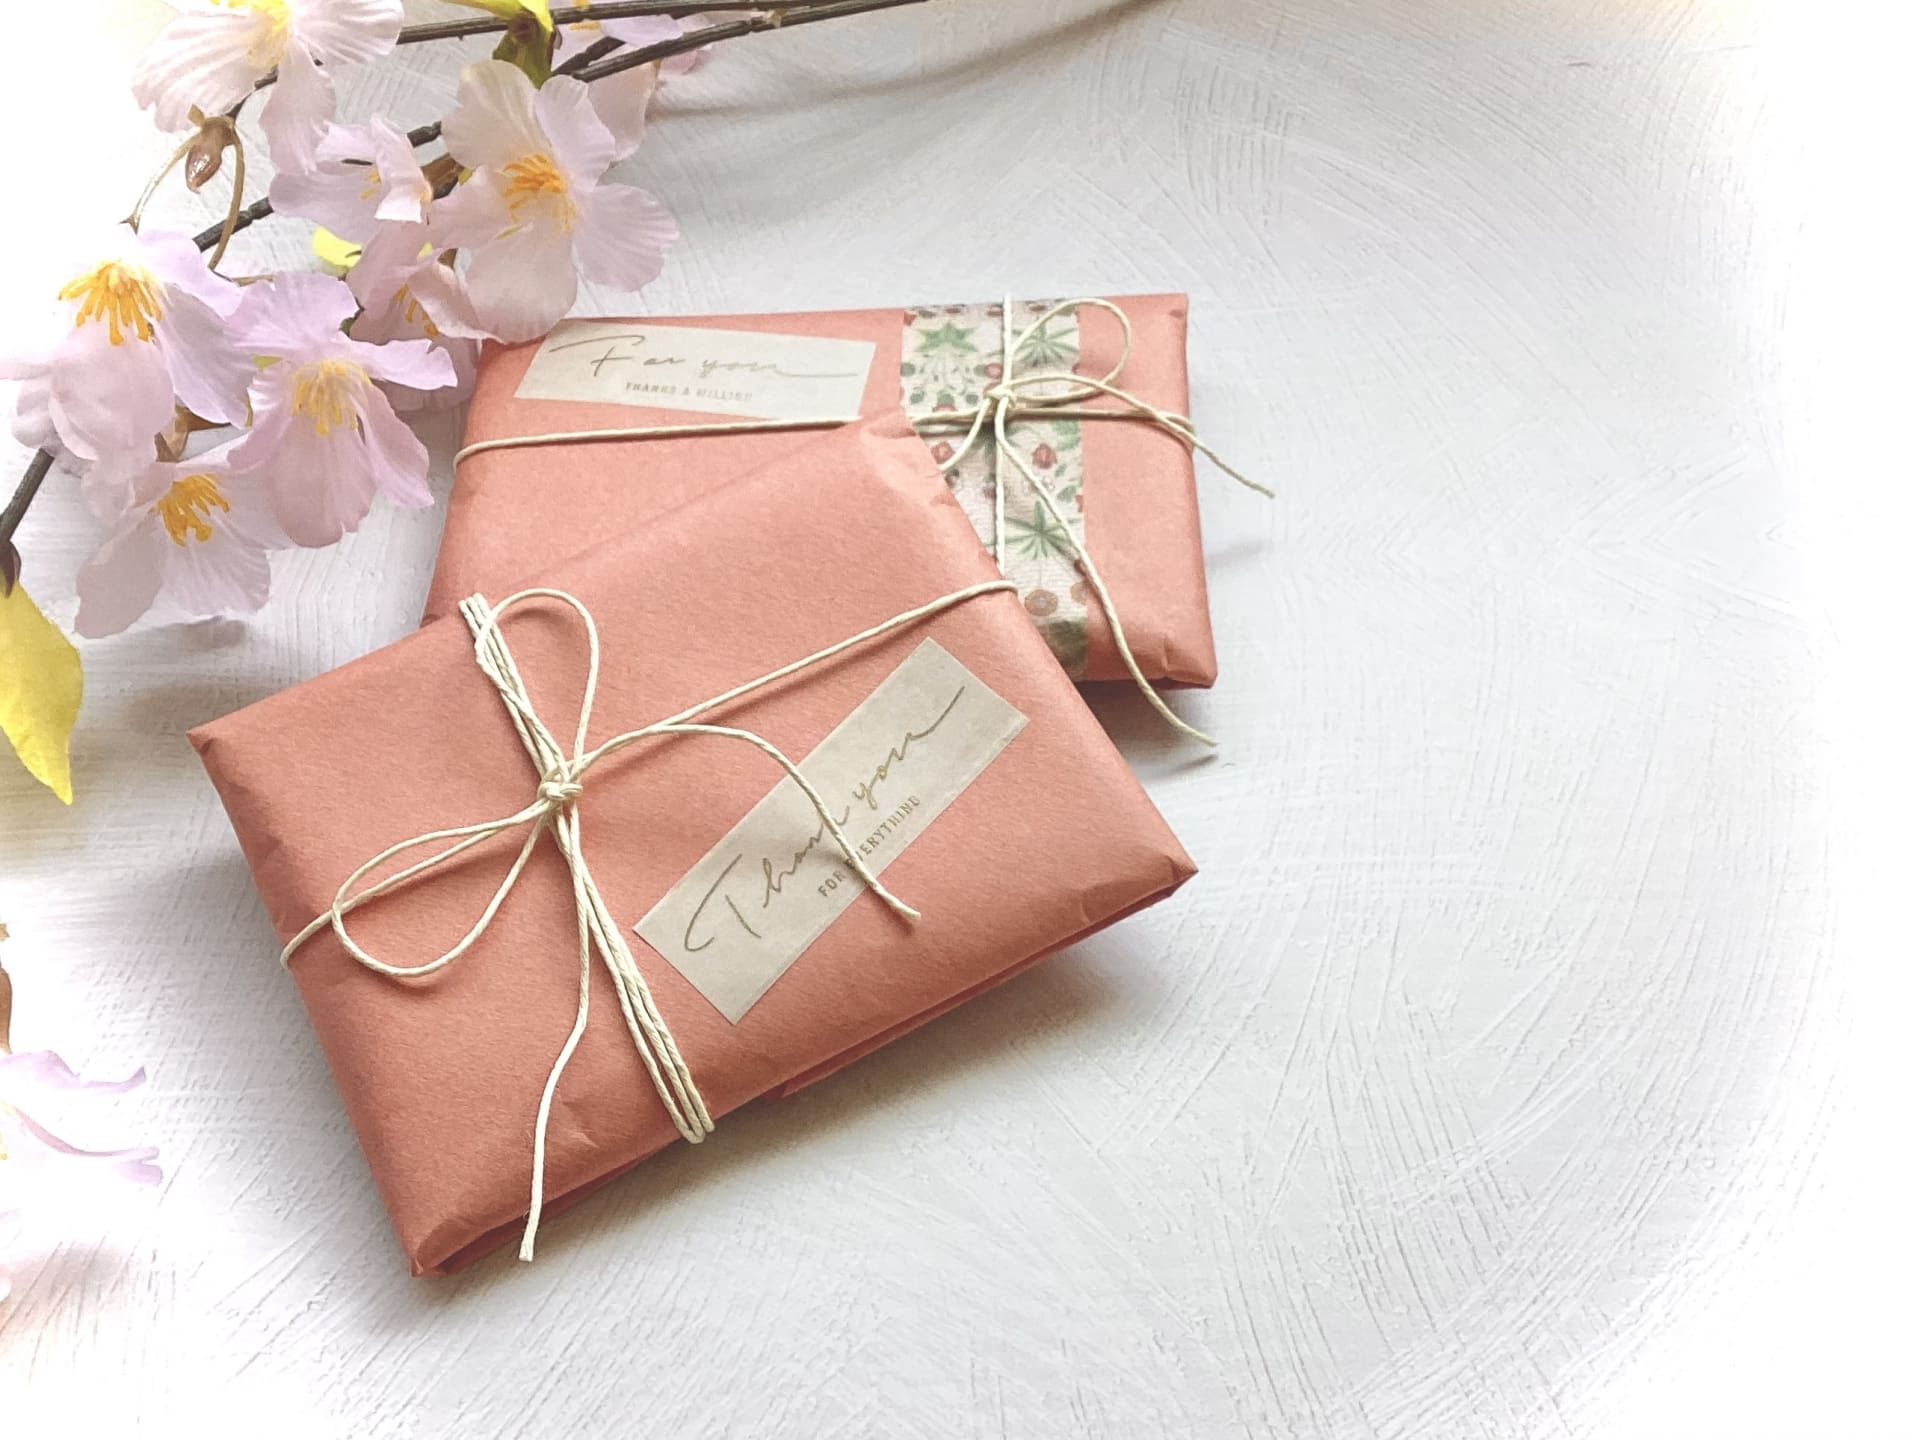 ピンクの包みの小さなプレゼントと桜